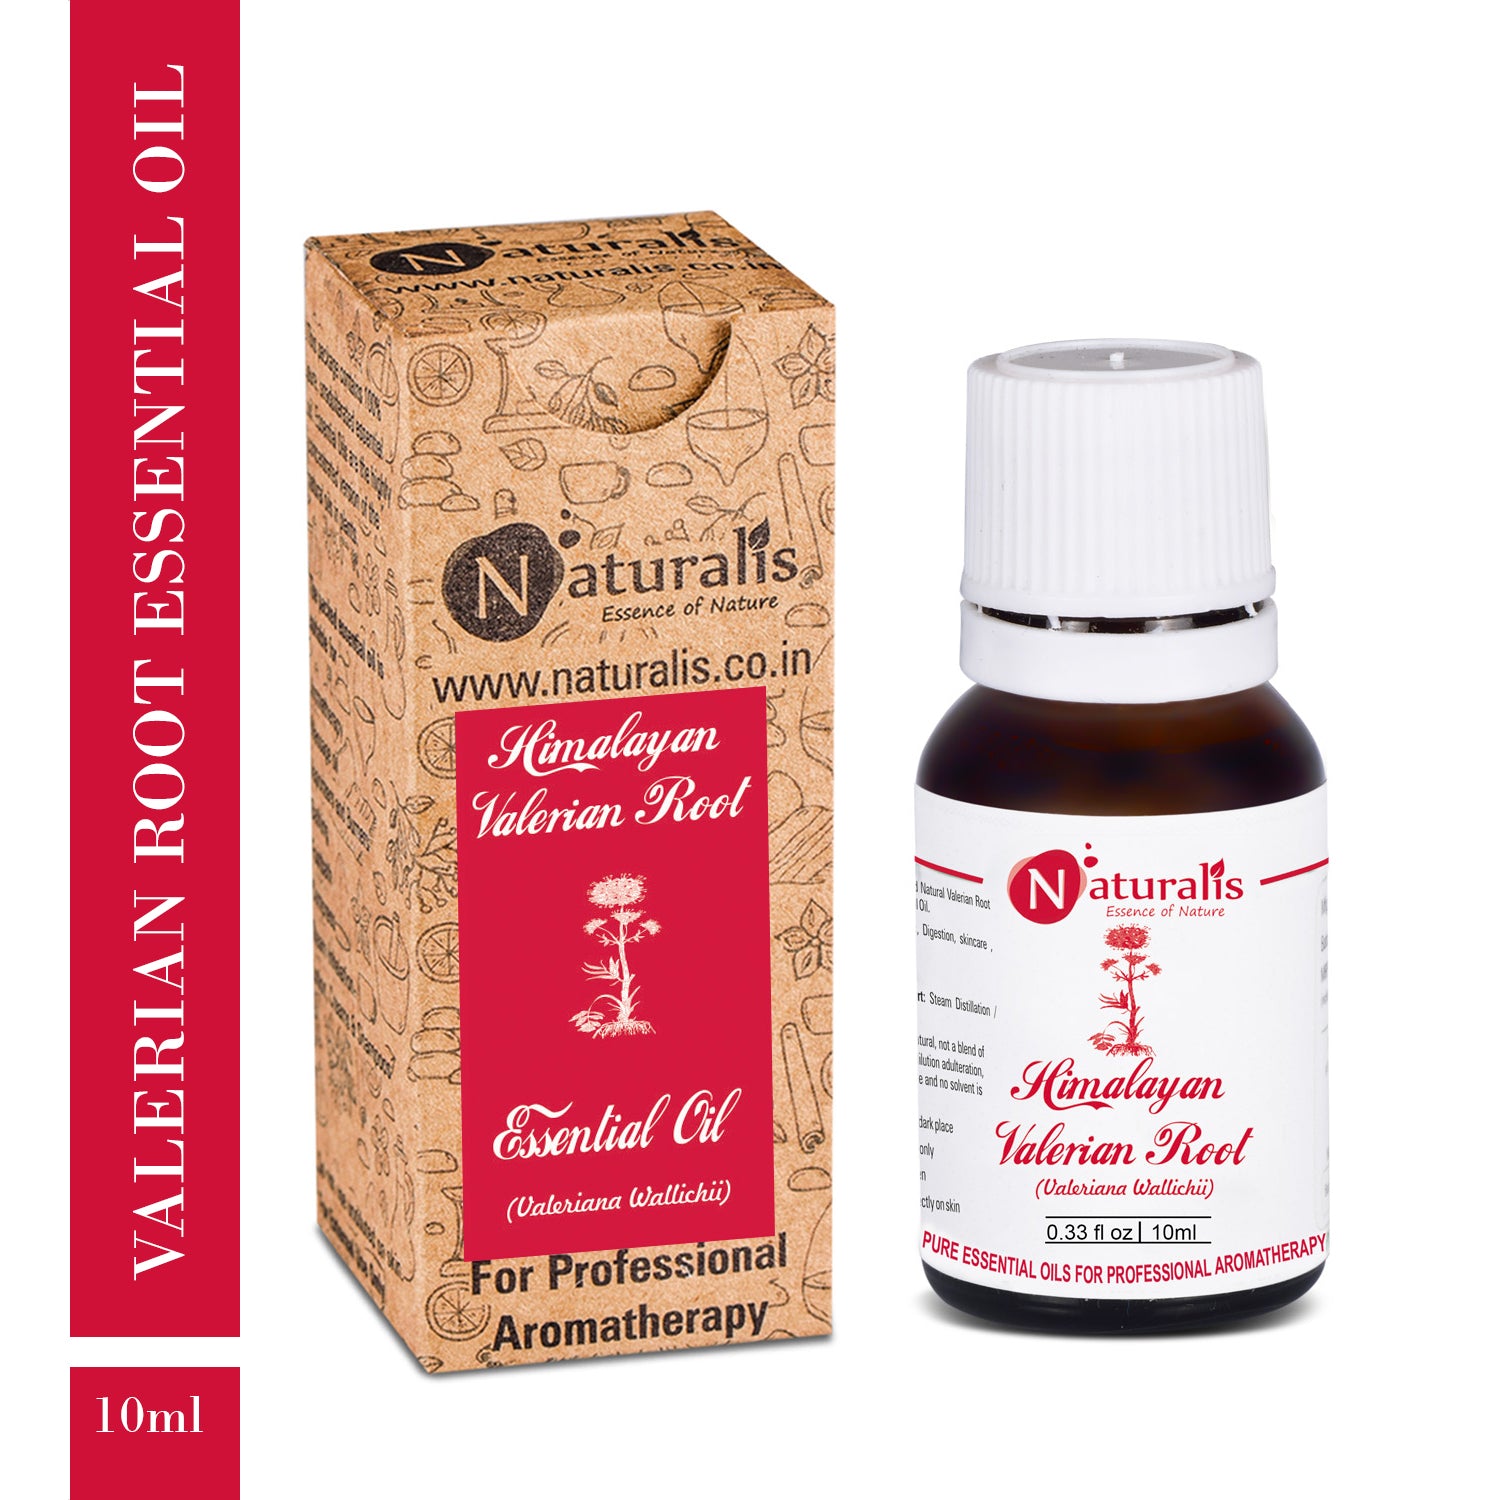 Himalayan Valerian Root Essential Oil by Naturalis -Pure & Natural - Naturalis